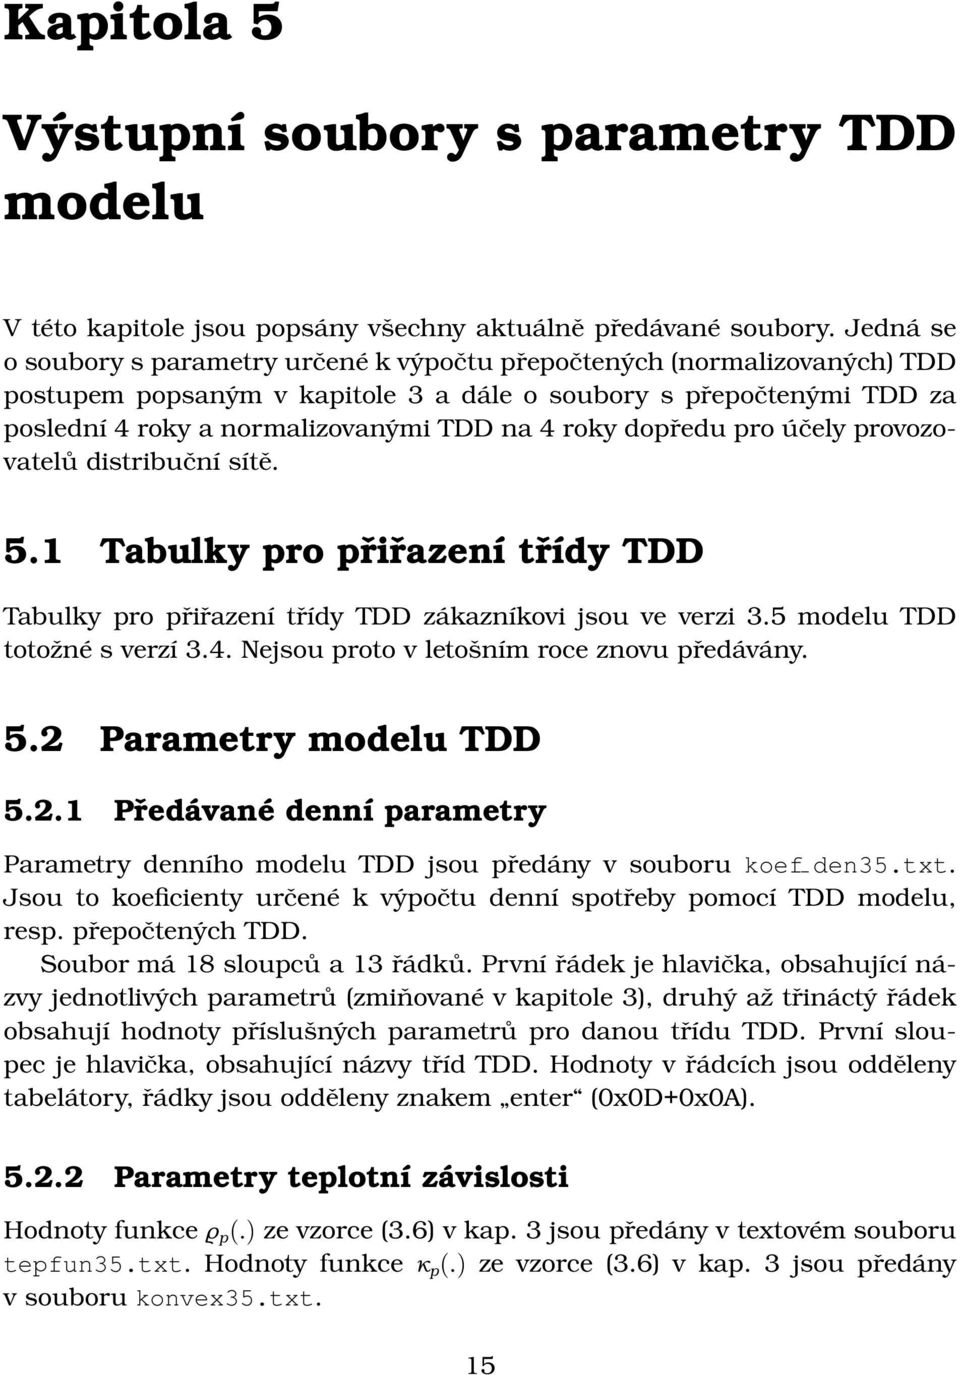 roky dopředu pro účely provozovatelů distribuční sítě. 5.1 Tabulky pro přiřazení třídy TDD Tabulky pro přiřazení třídy TDD zákazníkovi jsou ve verzi 3.5 modelu TDD totožné s verzí 3.4.